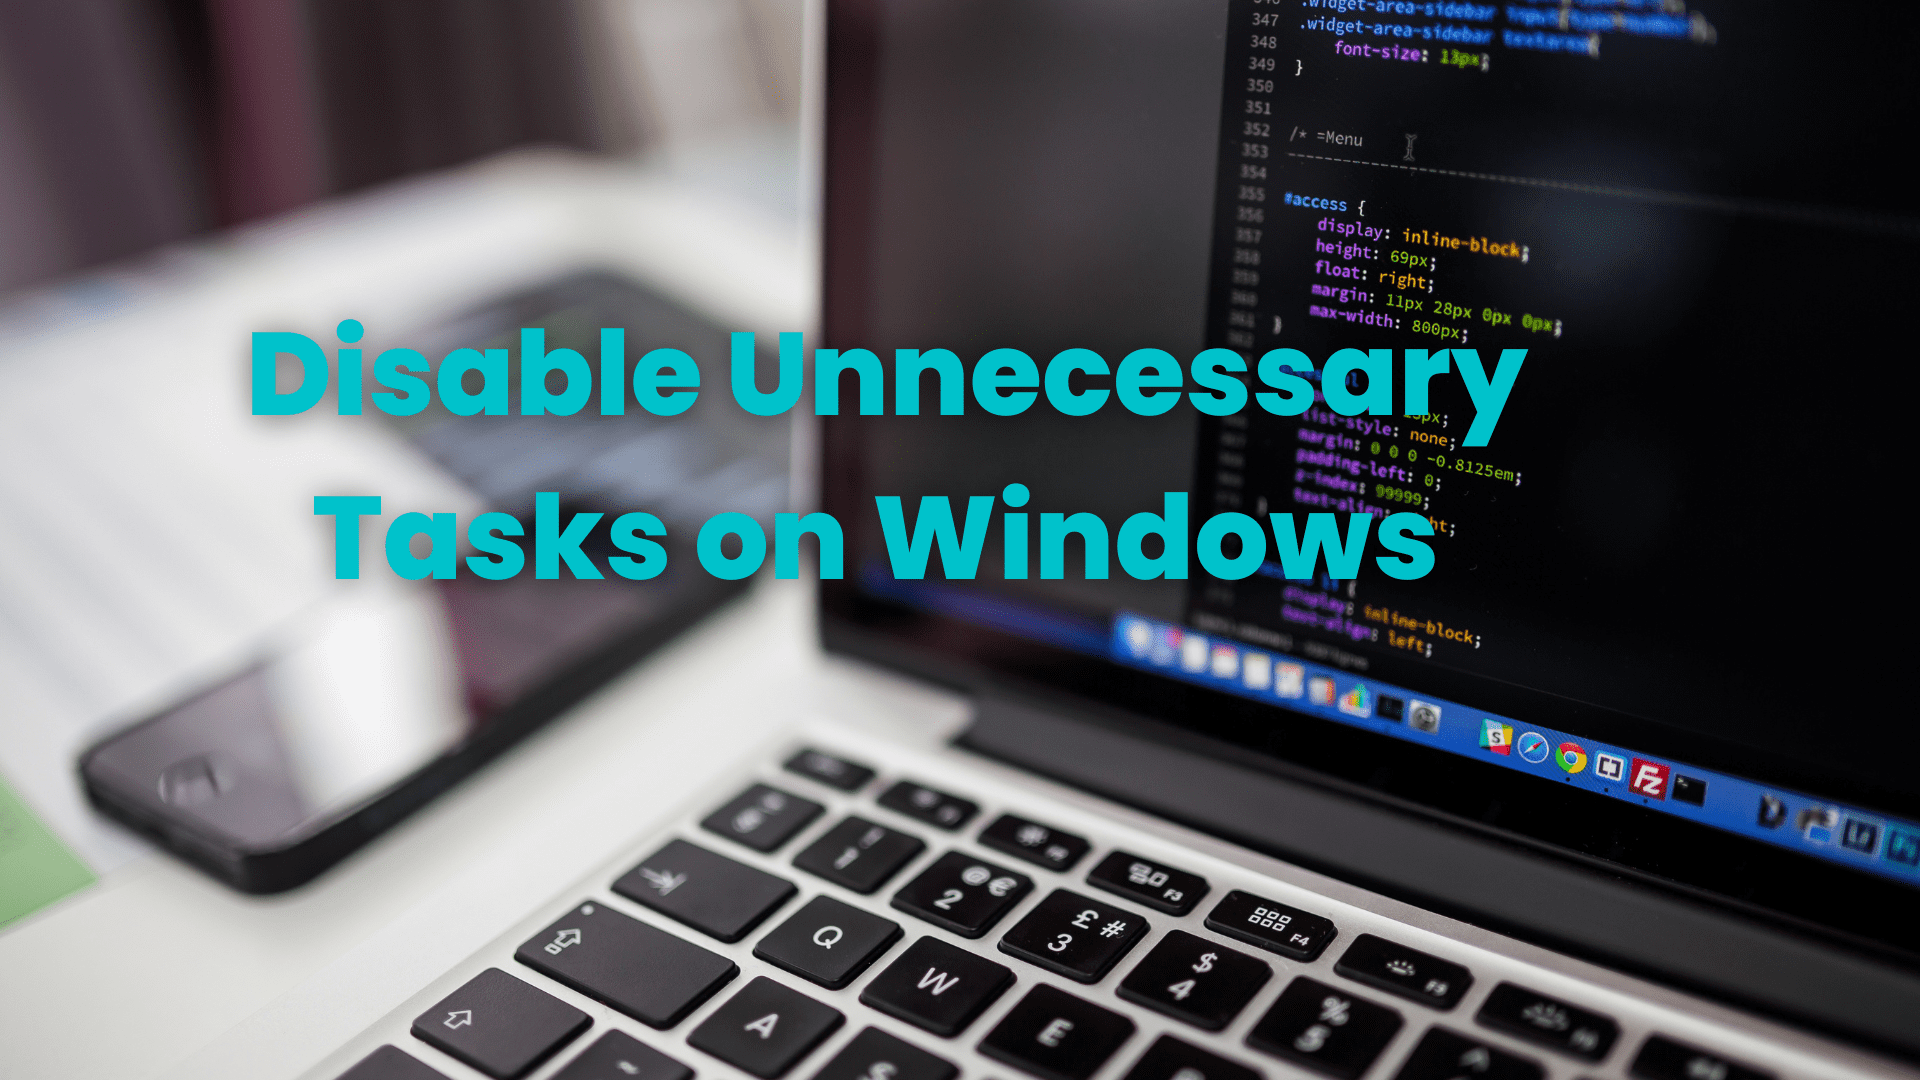 Disable Unnecessary Tasks on Windows